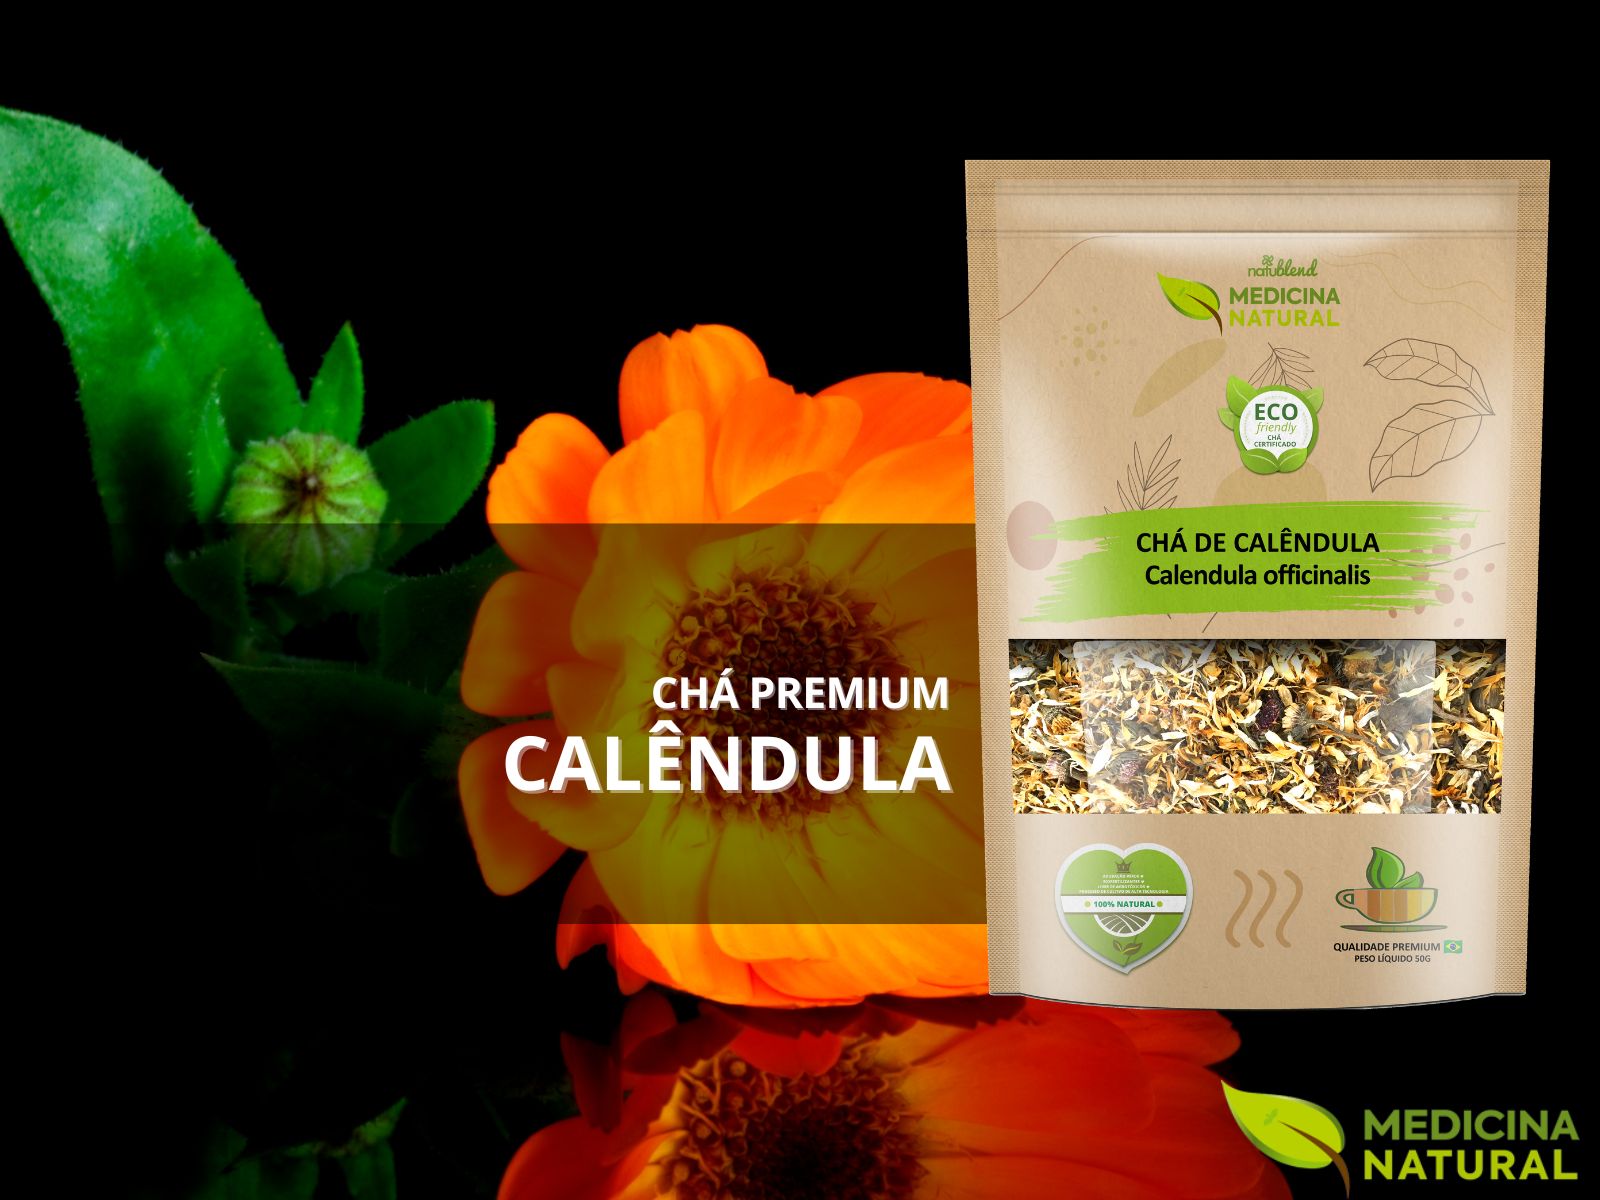 Chá de Calêndula – Calendula officinalis – Premium